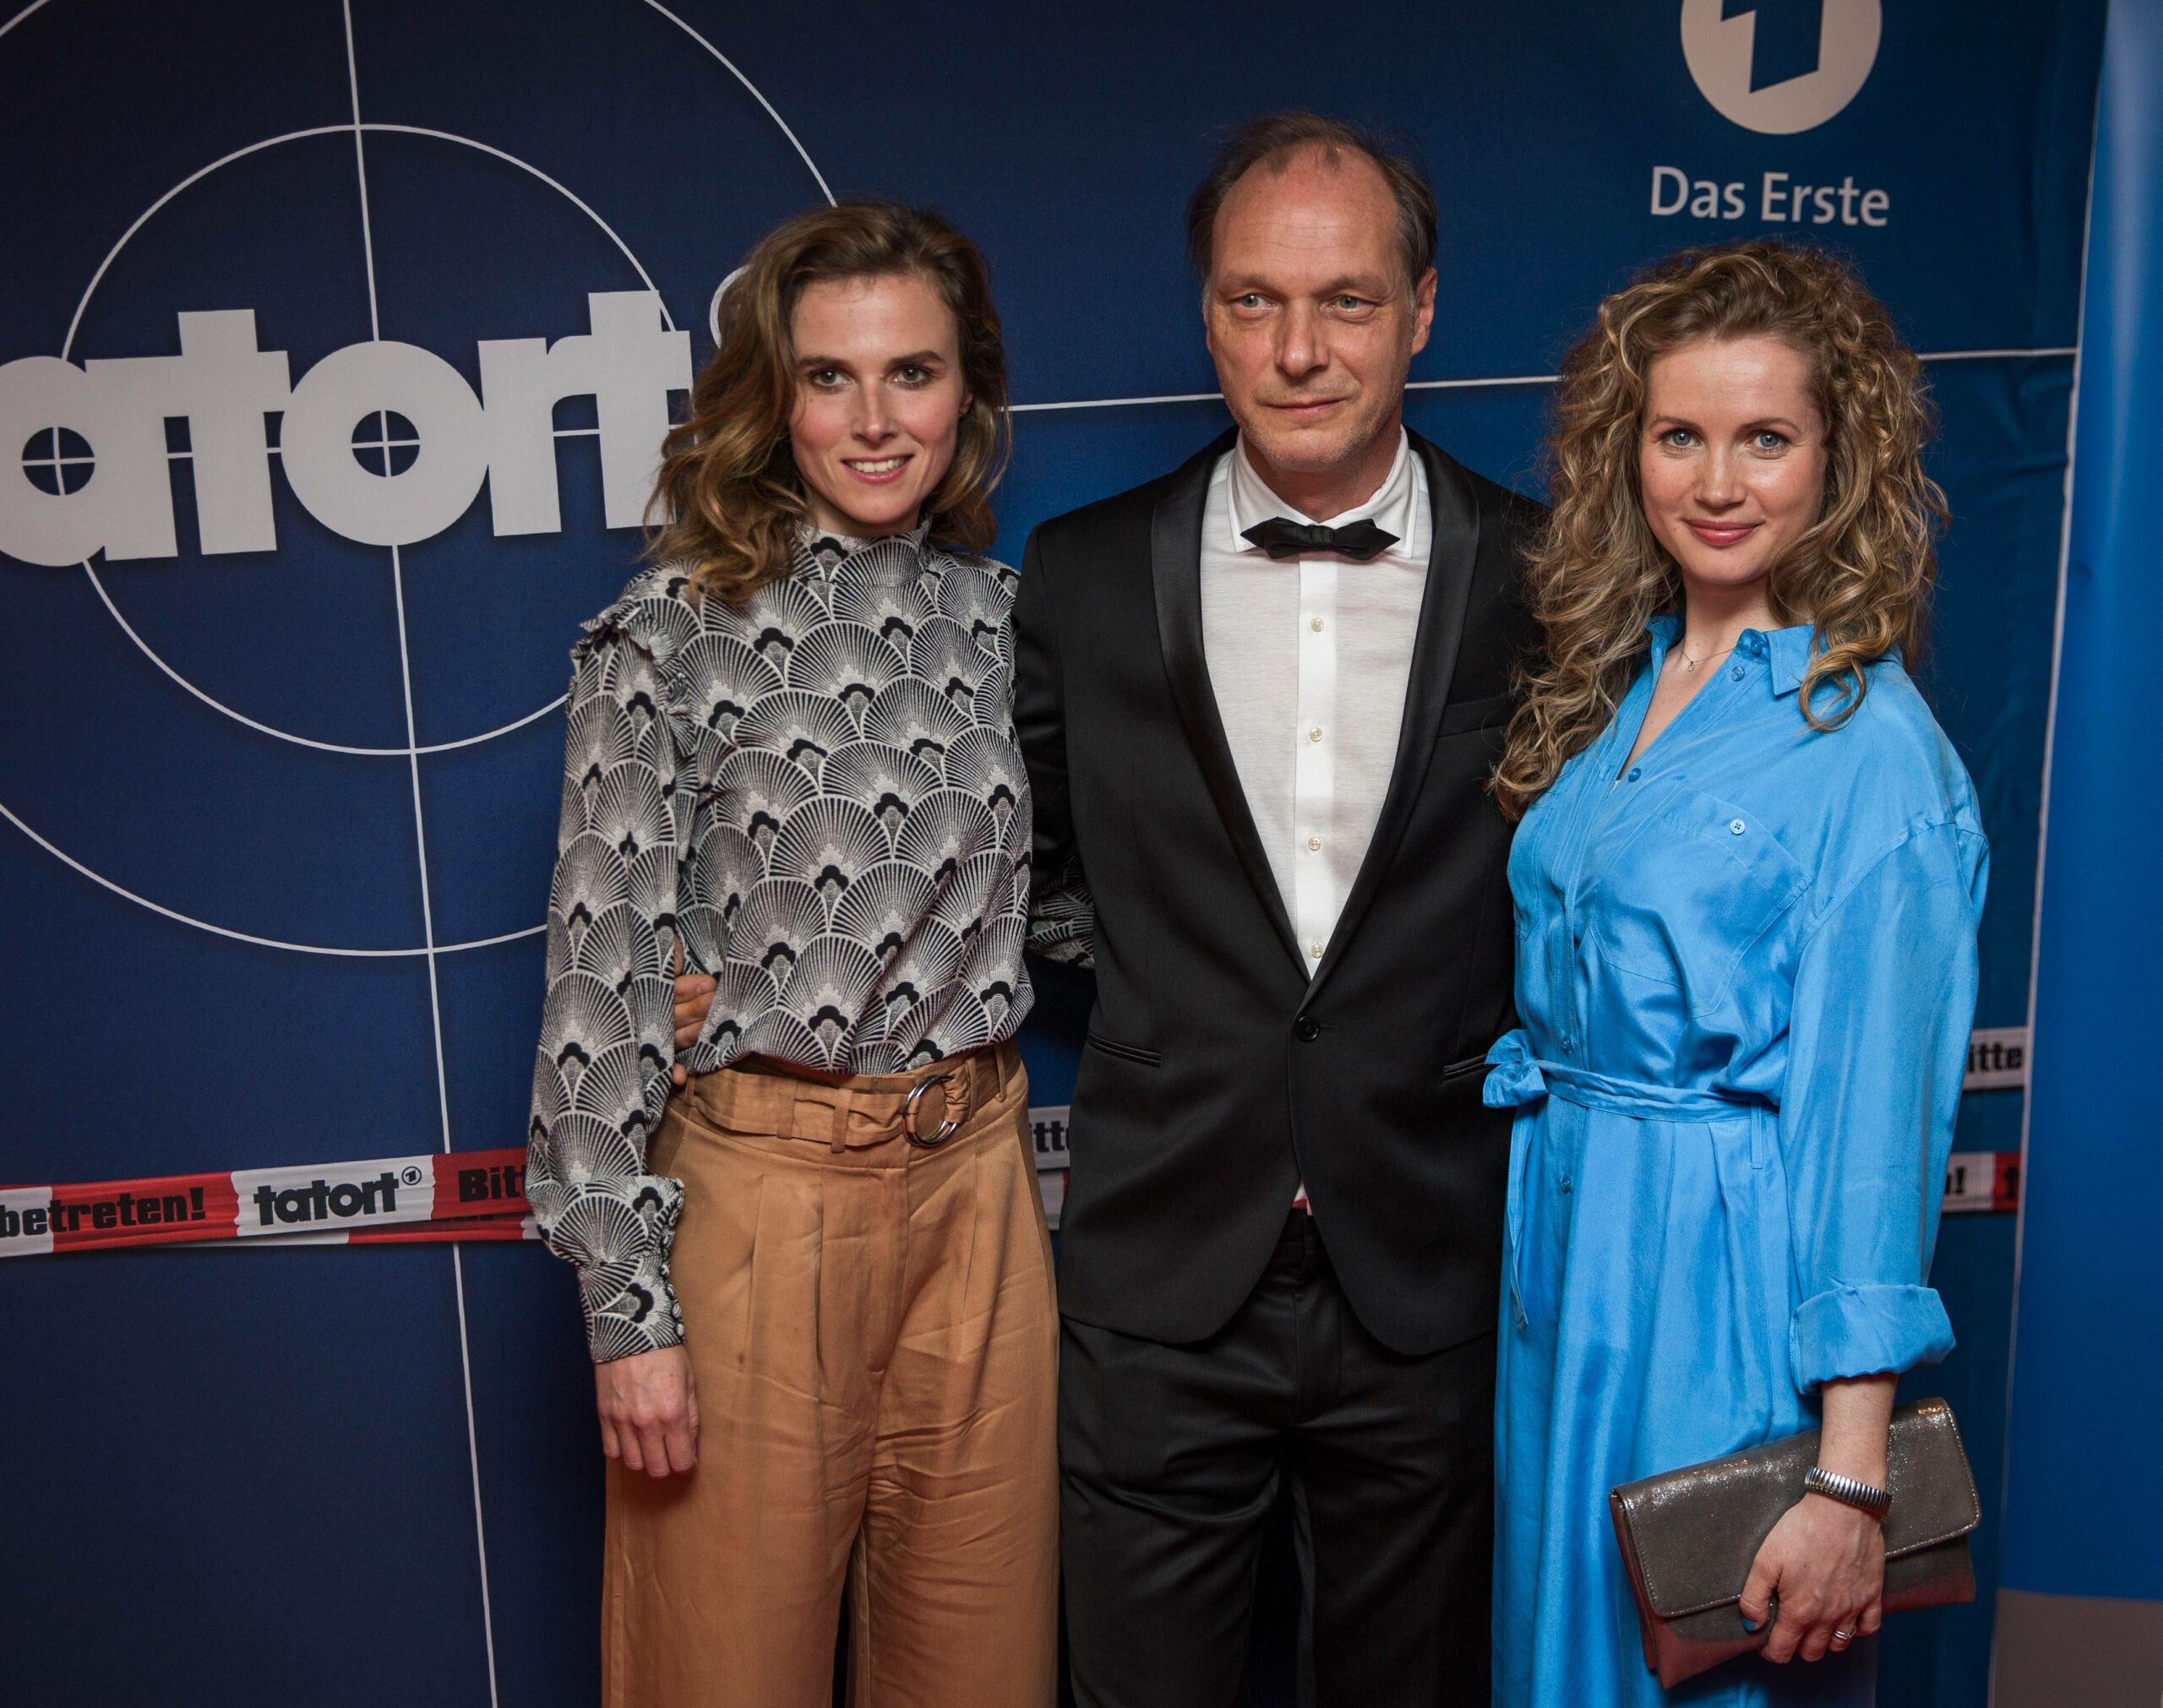 Die drei Schauspieler:innen des Dresden-Tatorts Karin Hanczewski, Martin Brambach und Cornelia Gröschel.